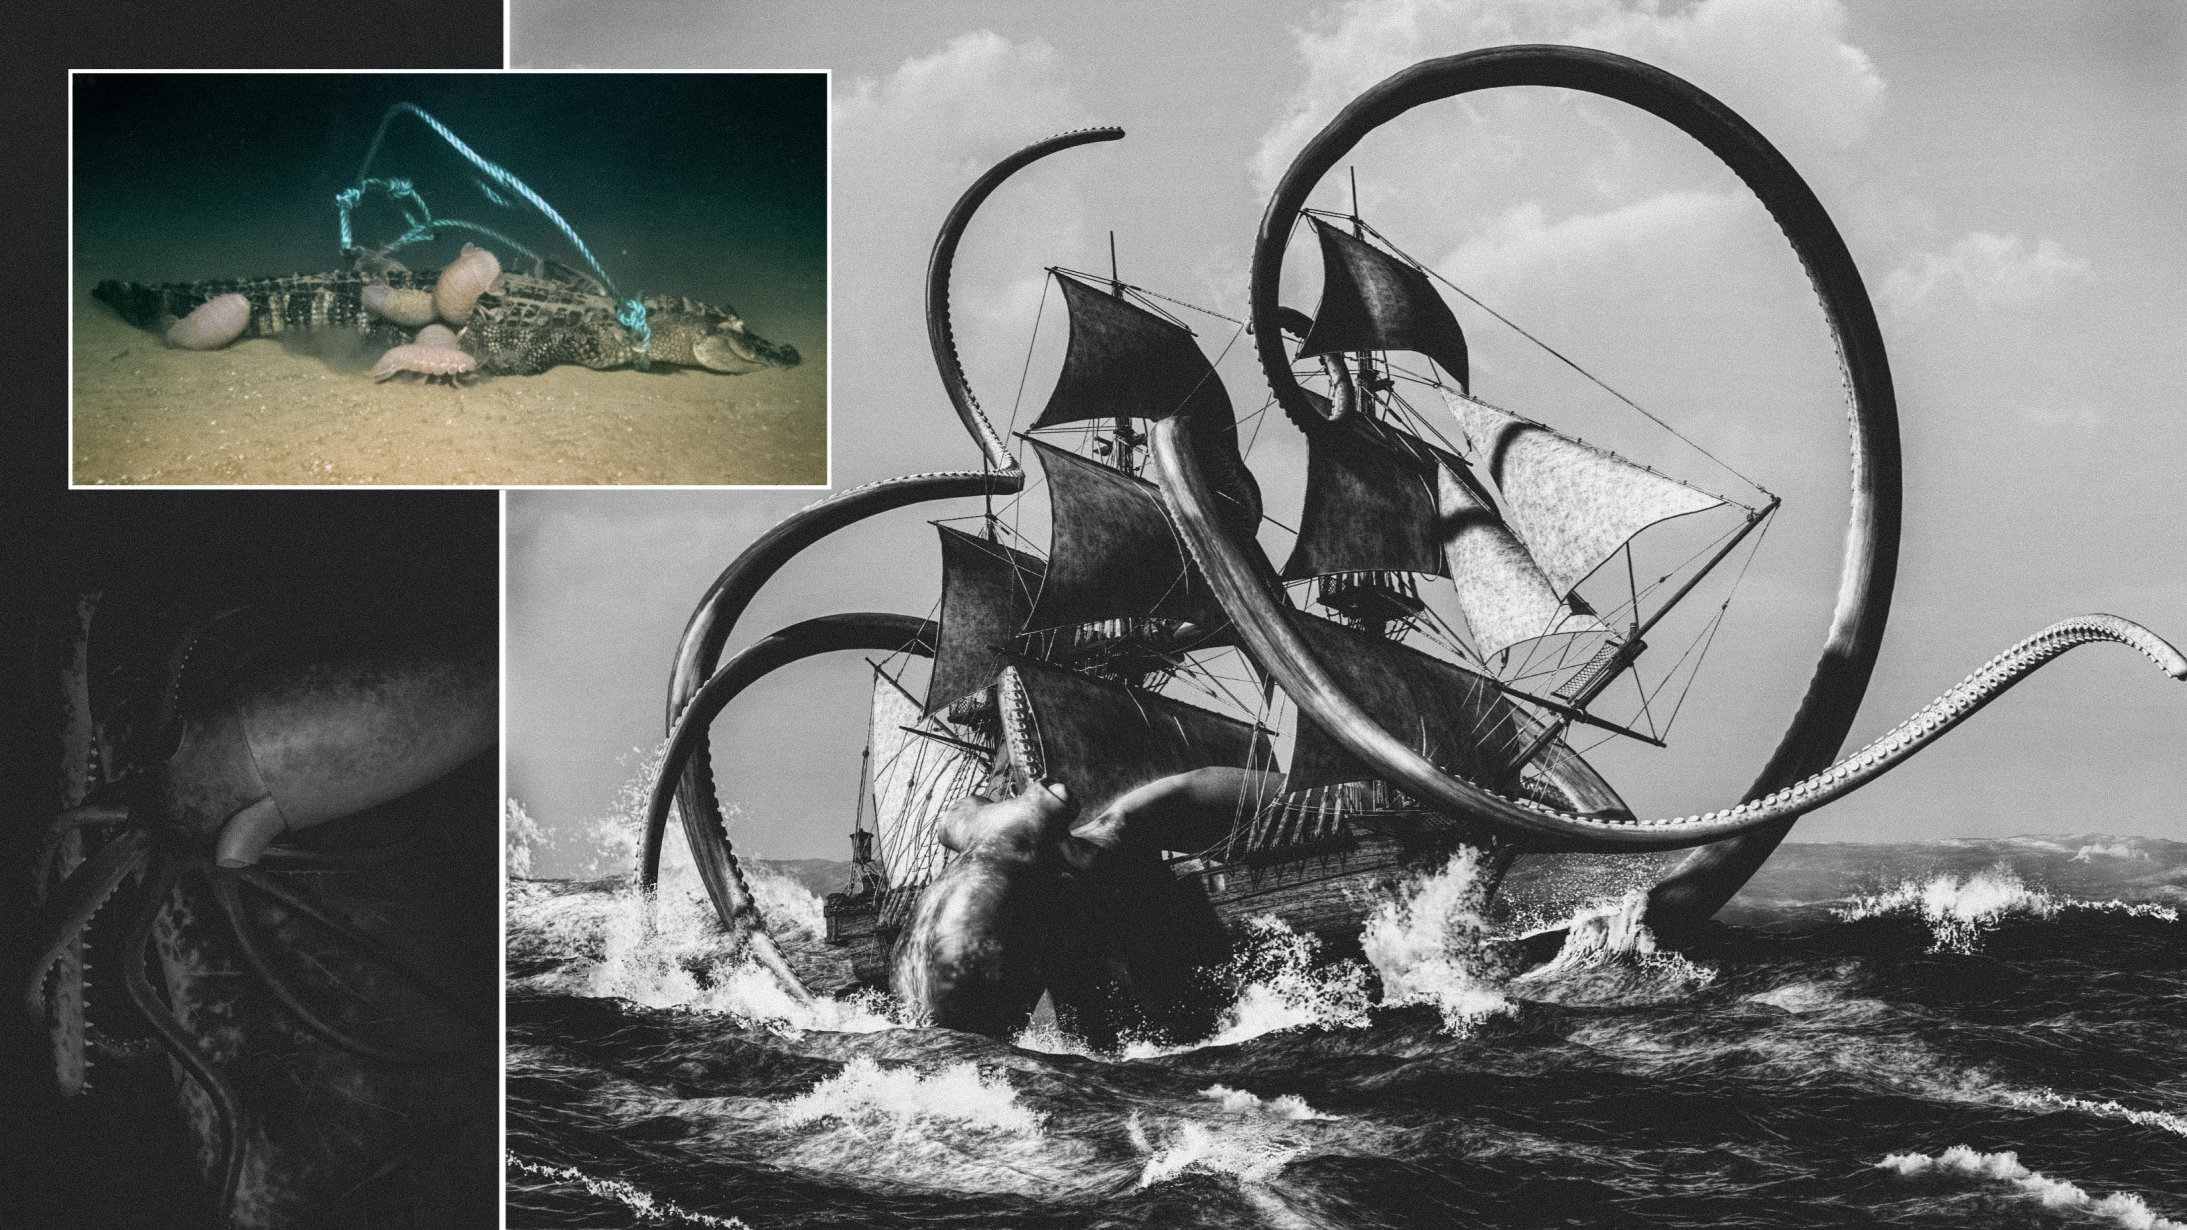 ¿Podría Kraken realmente existir? Los científicos hundieron tres caimanes muertos en las profundidades del mar, ¡uno de ellos dejó solo explicaciones aterradoras! 2